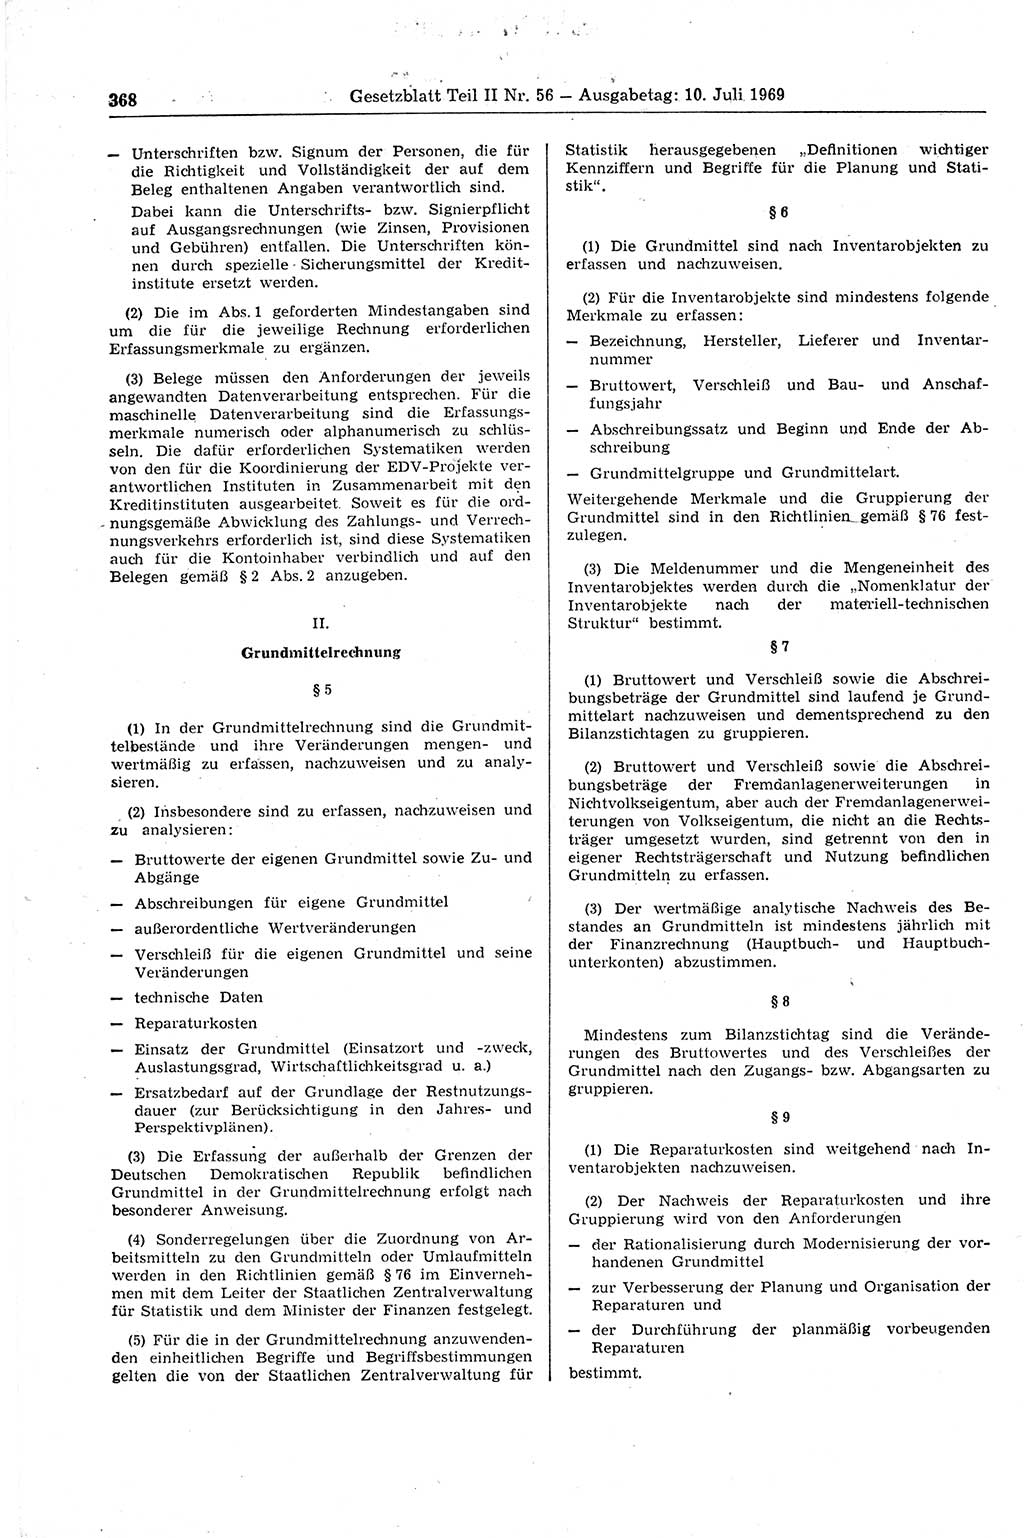 Gesetzblatt (GBl.) der Deutschen Demokratischen Republik (DDR) Teil ⅠⅠ 1969, Seite 368 (GBl. DDR ⅠⅠ 1969, S. 368)